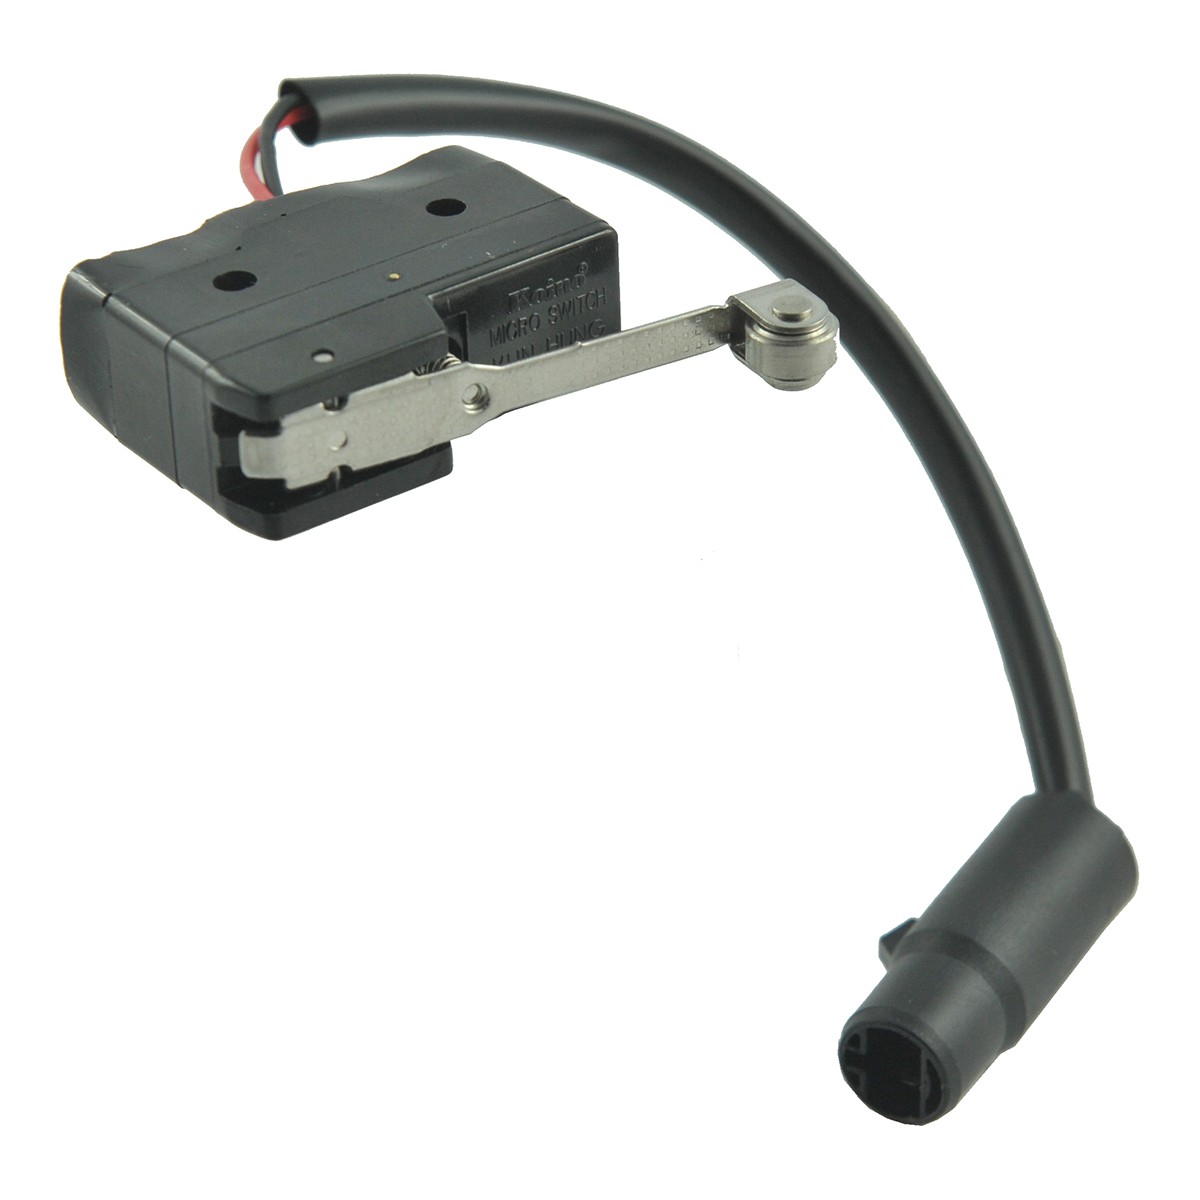 PTO/PTO lever position sensor / 125VAC/15A / TRG750 / MT40007111 / A1750300 / 40007111